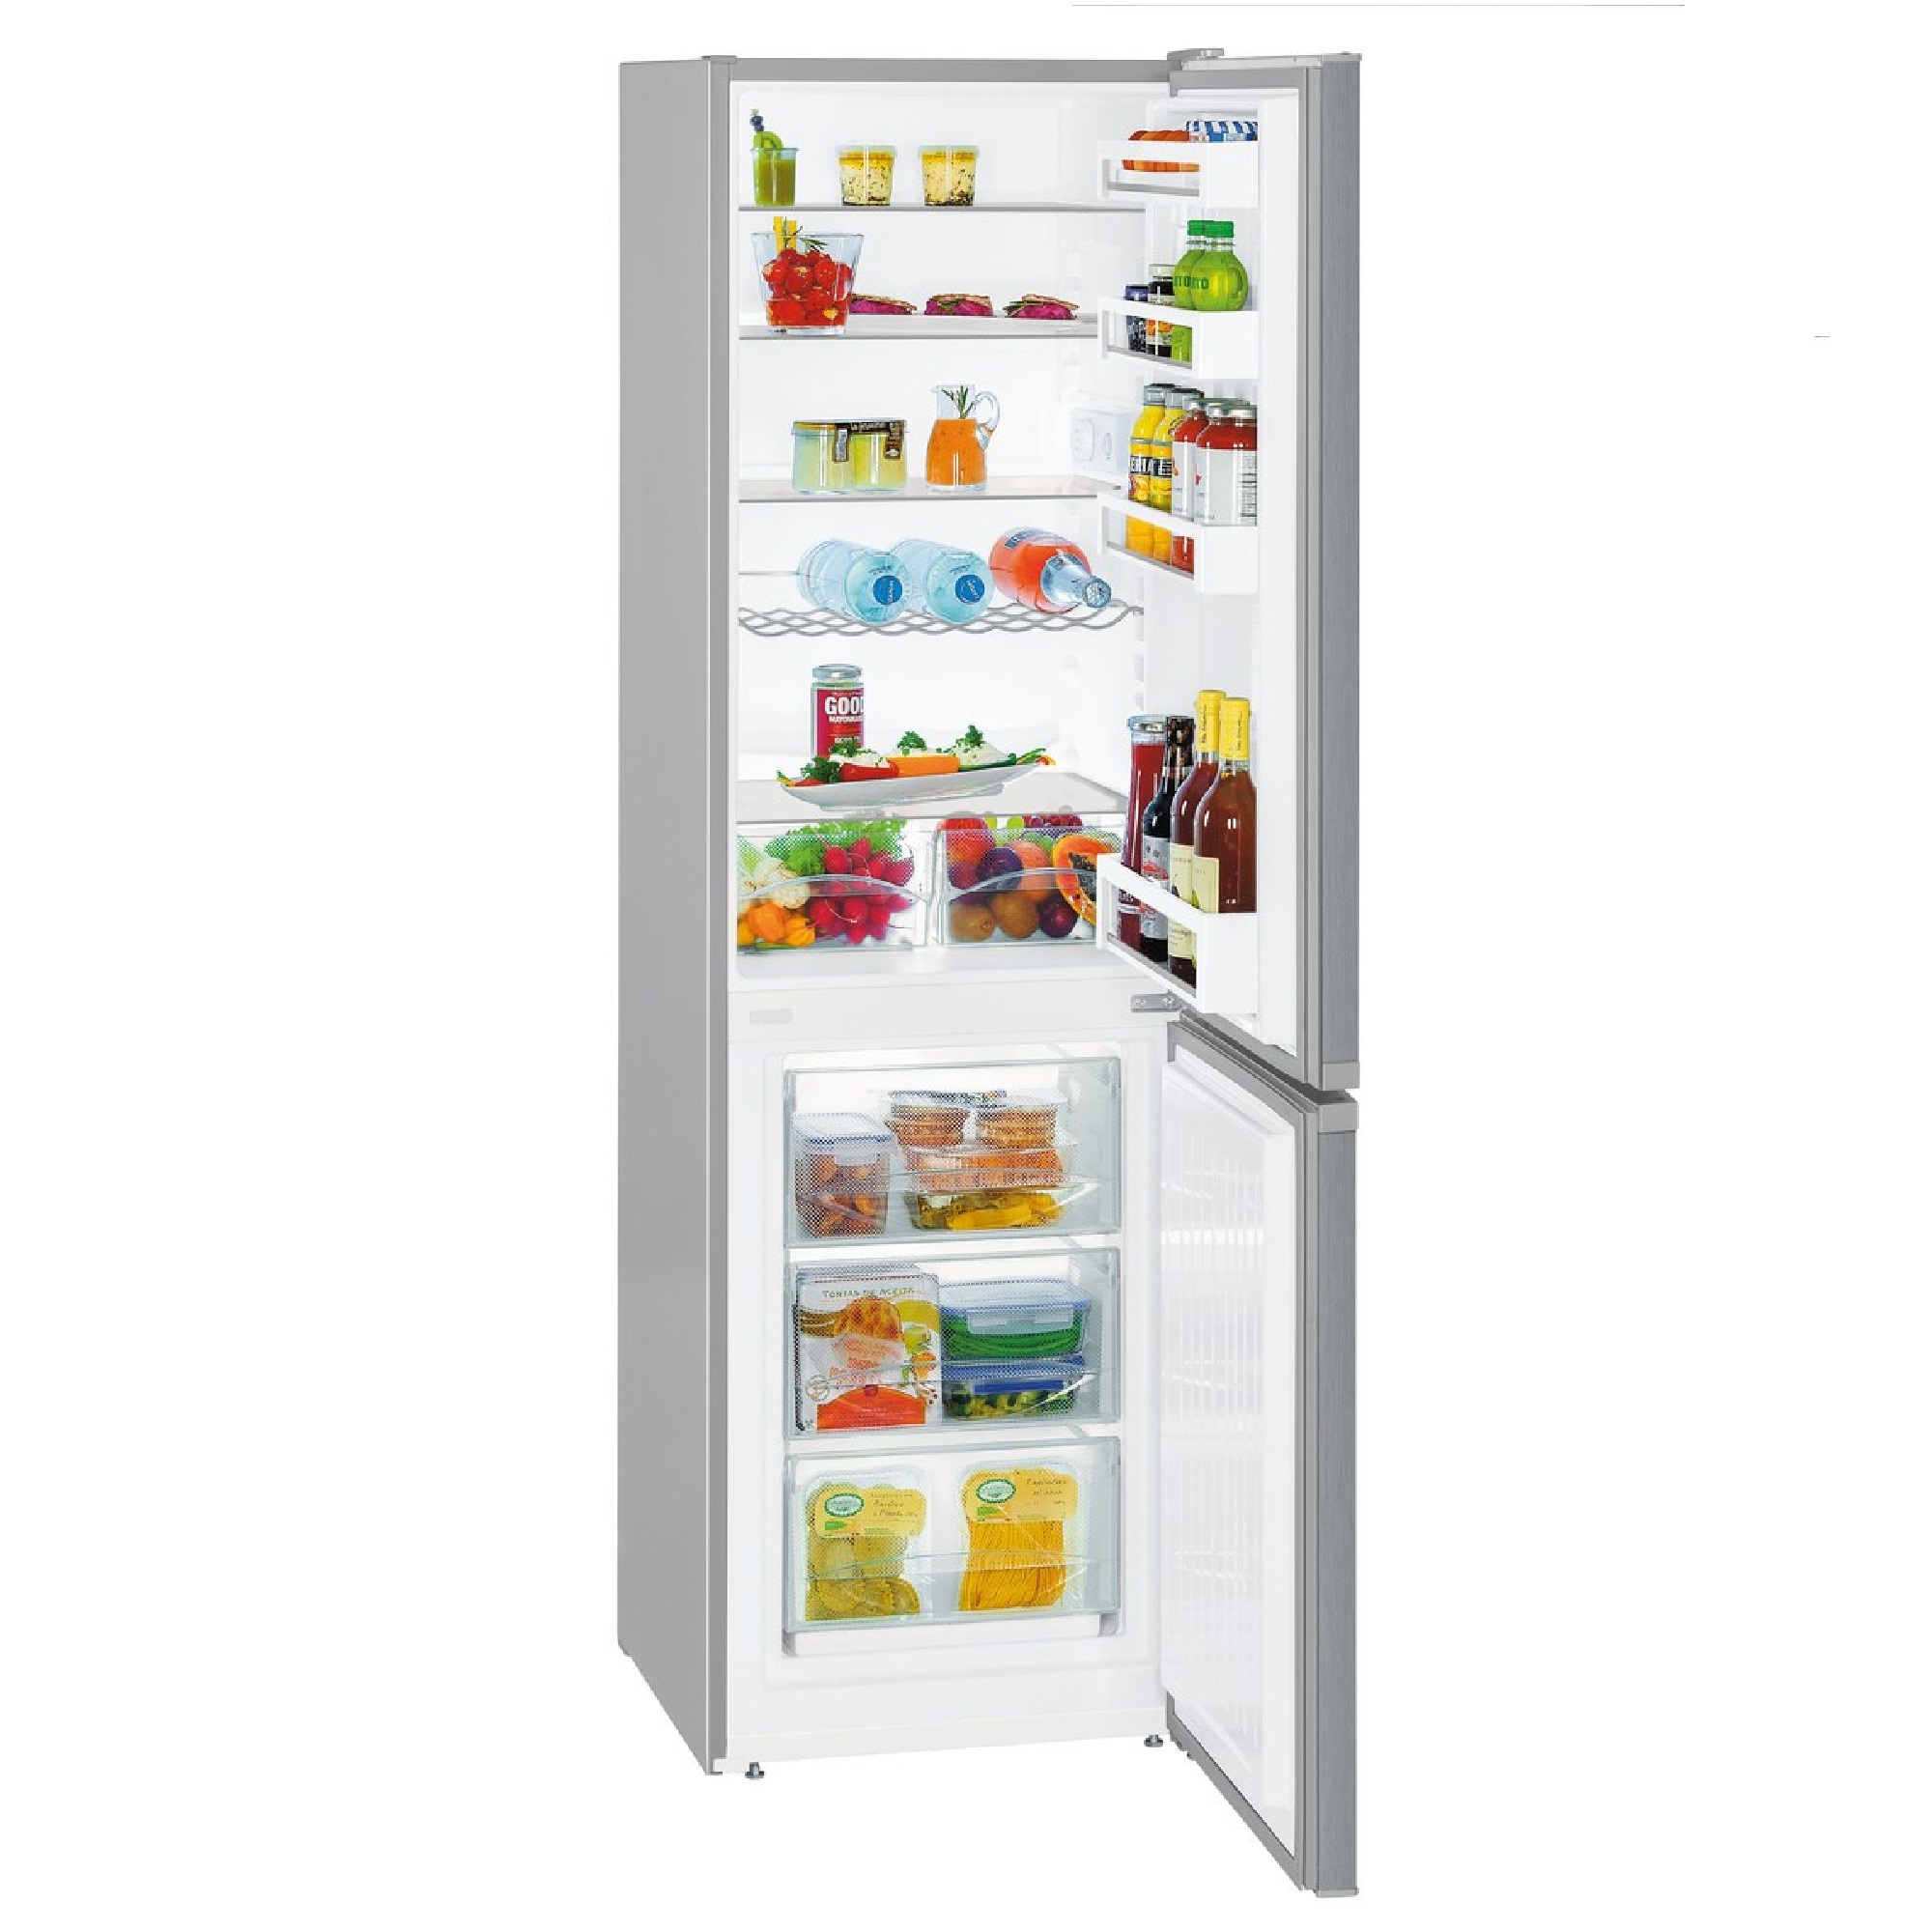 Холодильник либхер купить в спб. Холодильник Liebherr cuel 3331. Холодильник Liebherr CUWB 3311. Liebherr cuel 3331-22 001 холодильник. Холодильник Liebherr CUEF 3331-20 001.